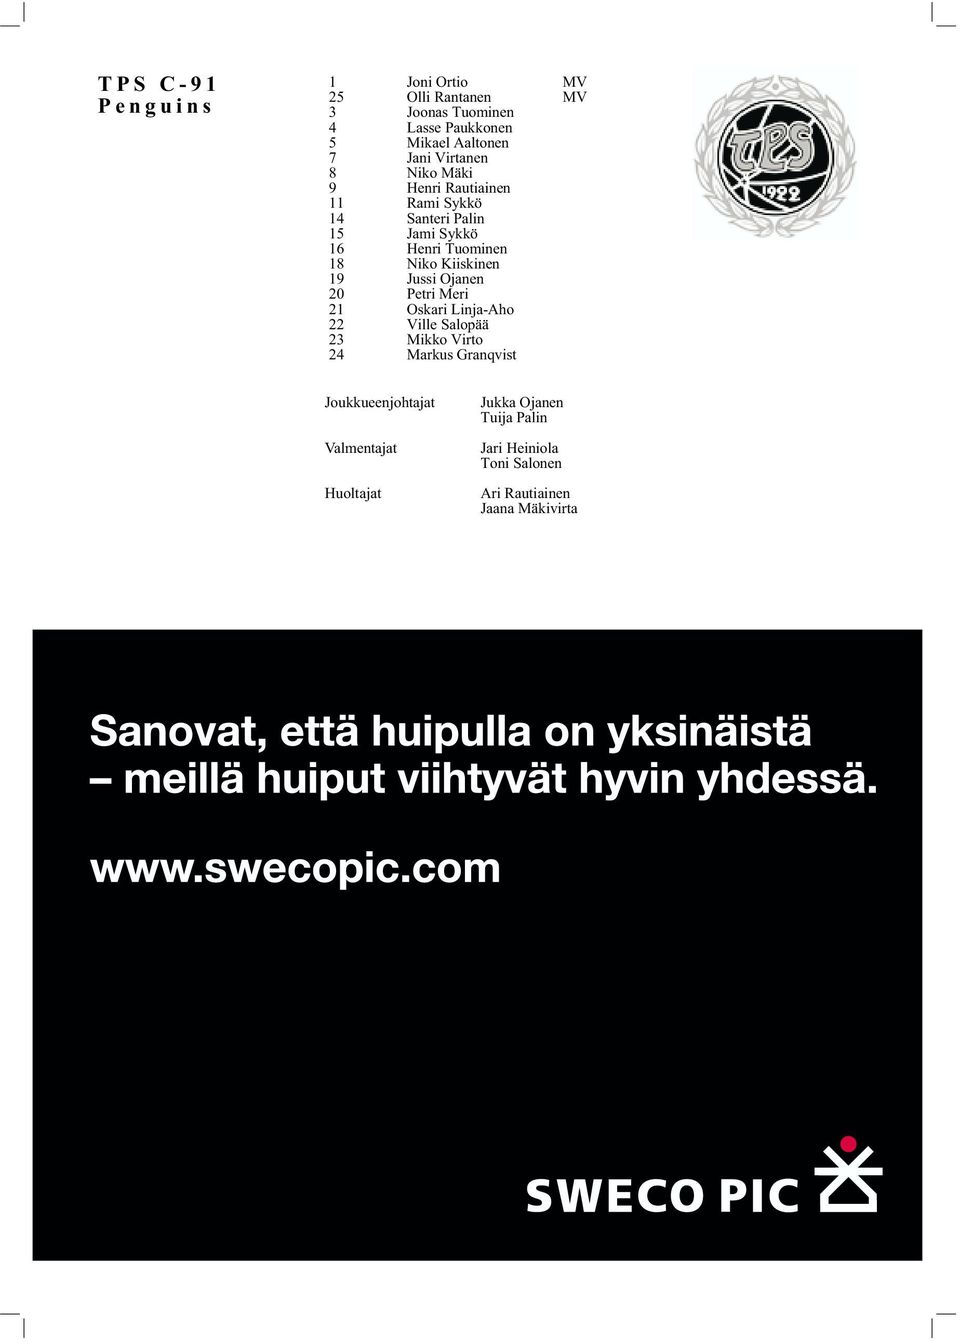 Kiiskinen 19 Jussi Ojanen 20 Petri Meri 21 Oskari Linja-Aho 22 Ville Salopää 23 Mikko Virto 24 Markus Granqvist